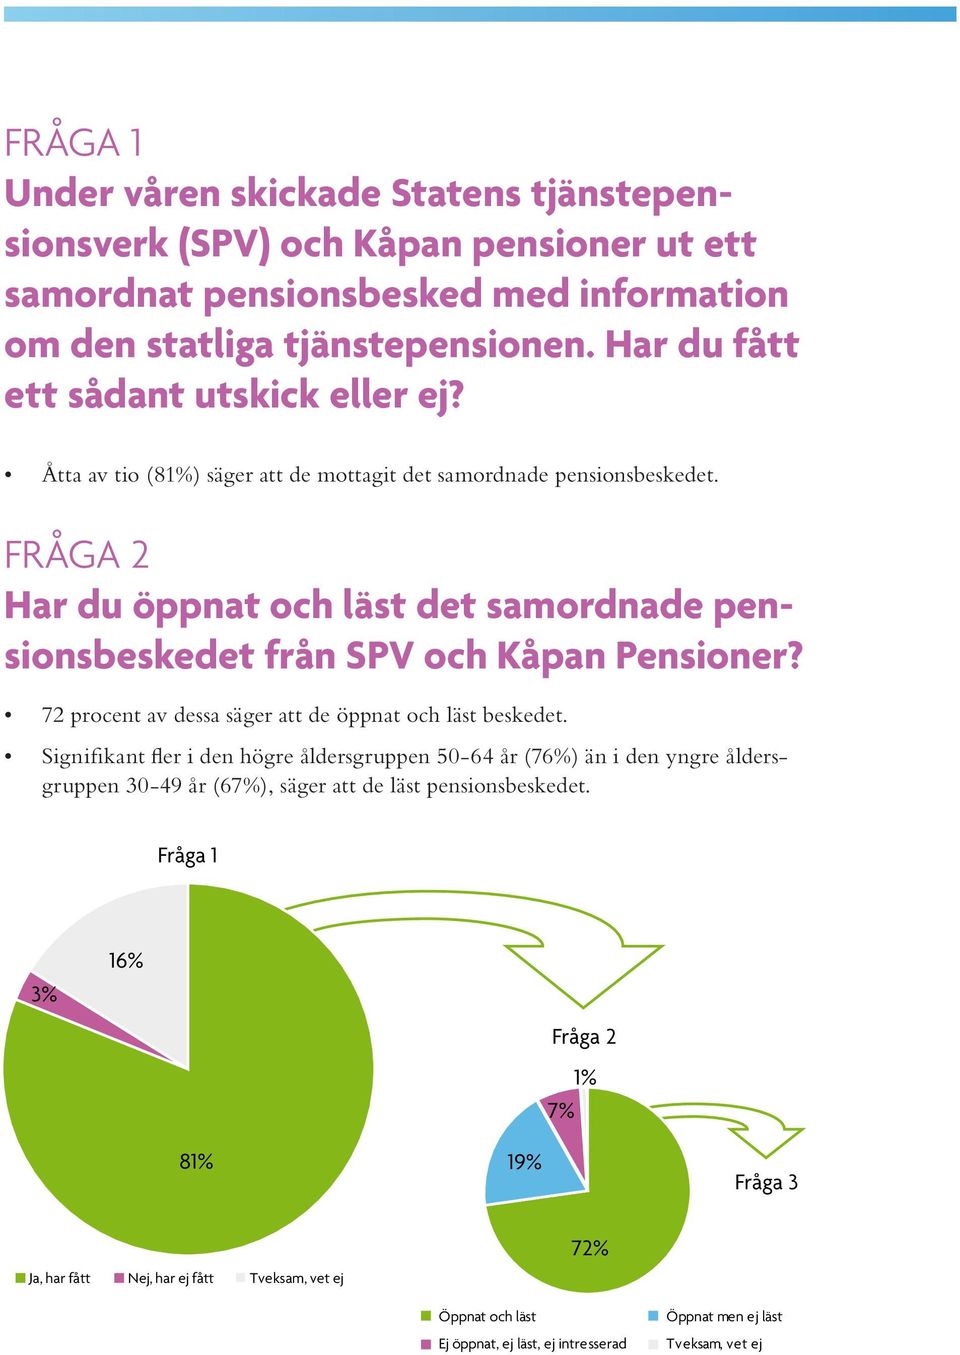 FRÅGA 2 Har du öppnat och läst det samordnade pensionsbeskedet från SPV och Kåpan Pensioner? 72 procent av dessa säger att de öppnat och läst beskedet.